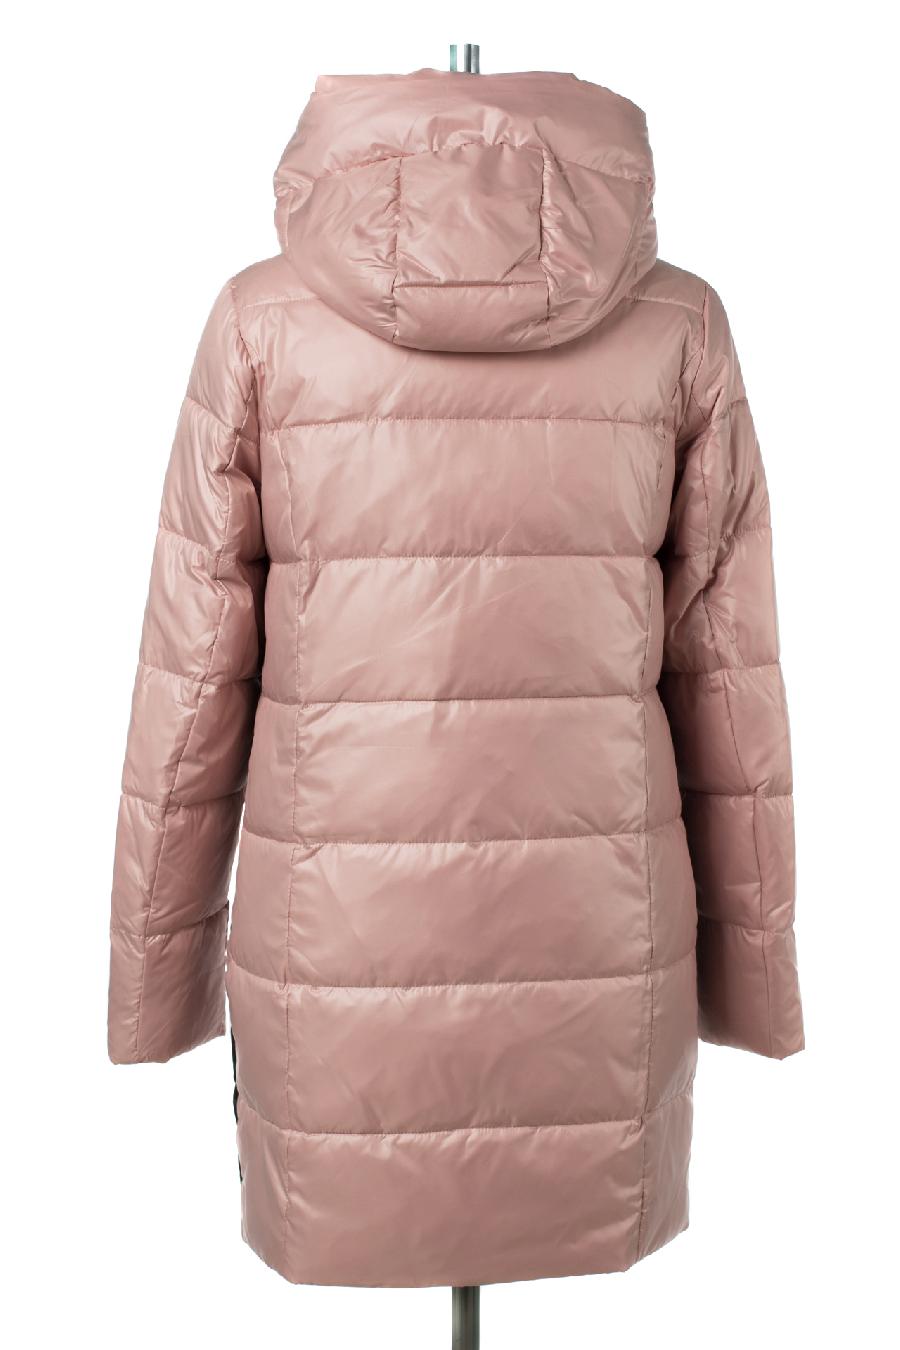 05-2057 Куртка женская зимняя (Биопух) Плащевка розовый